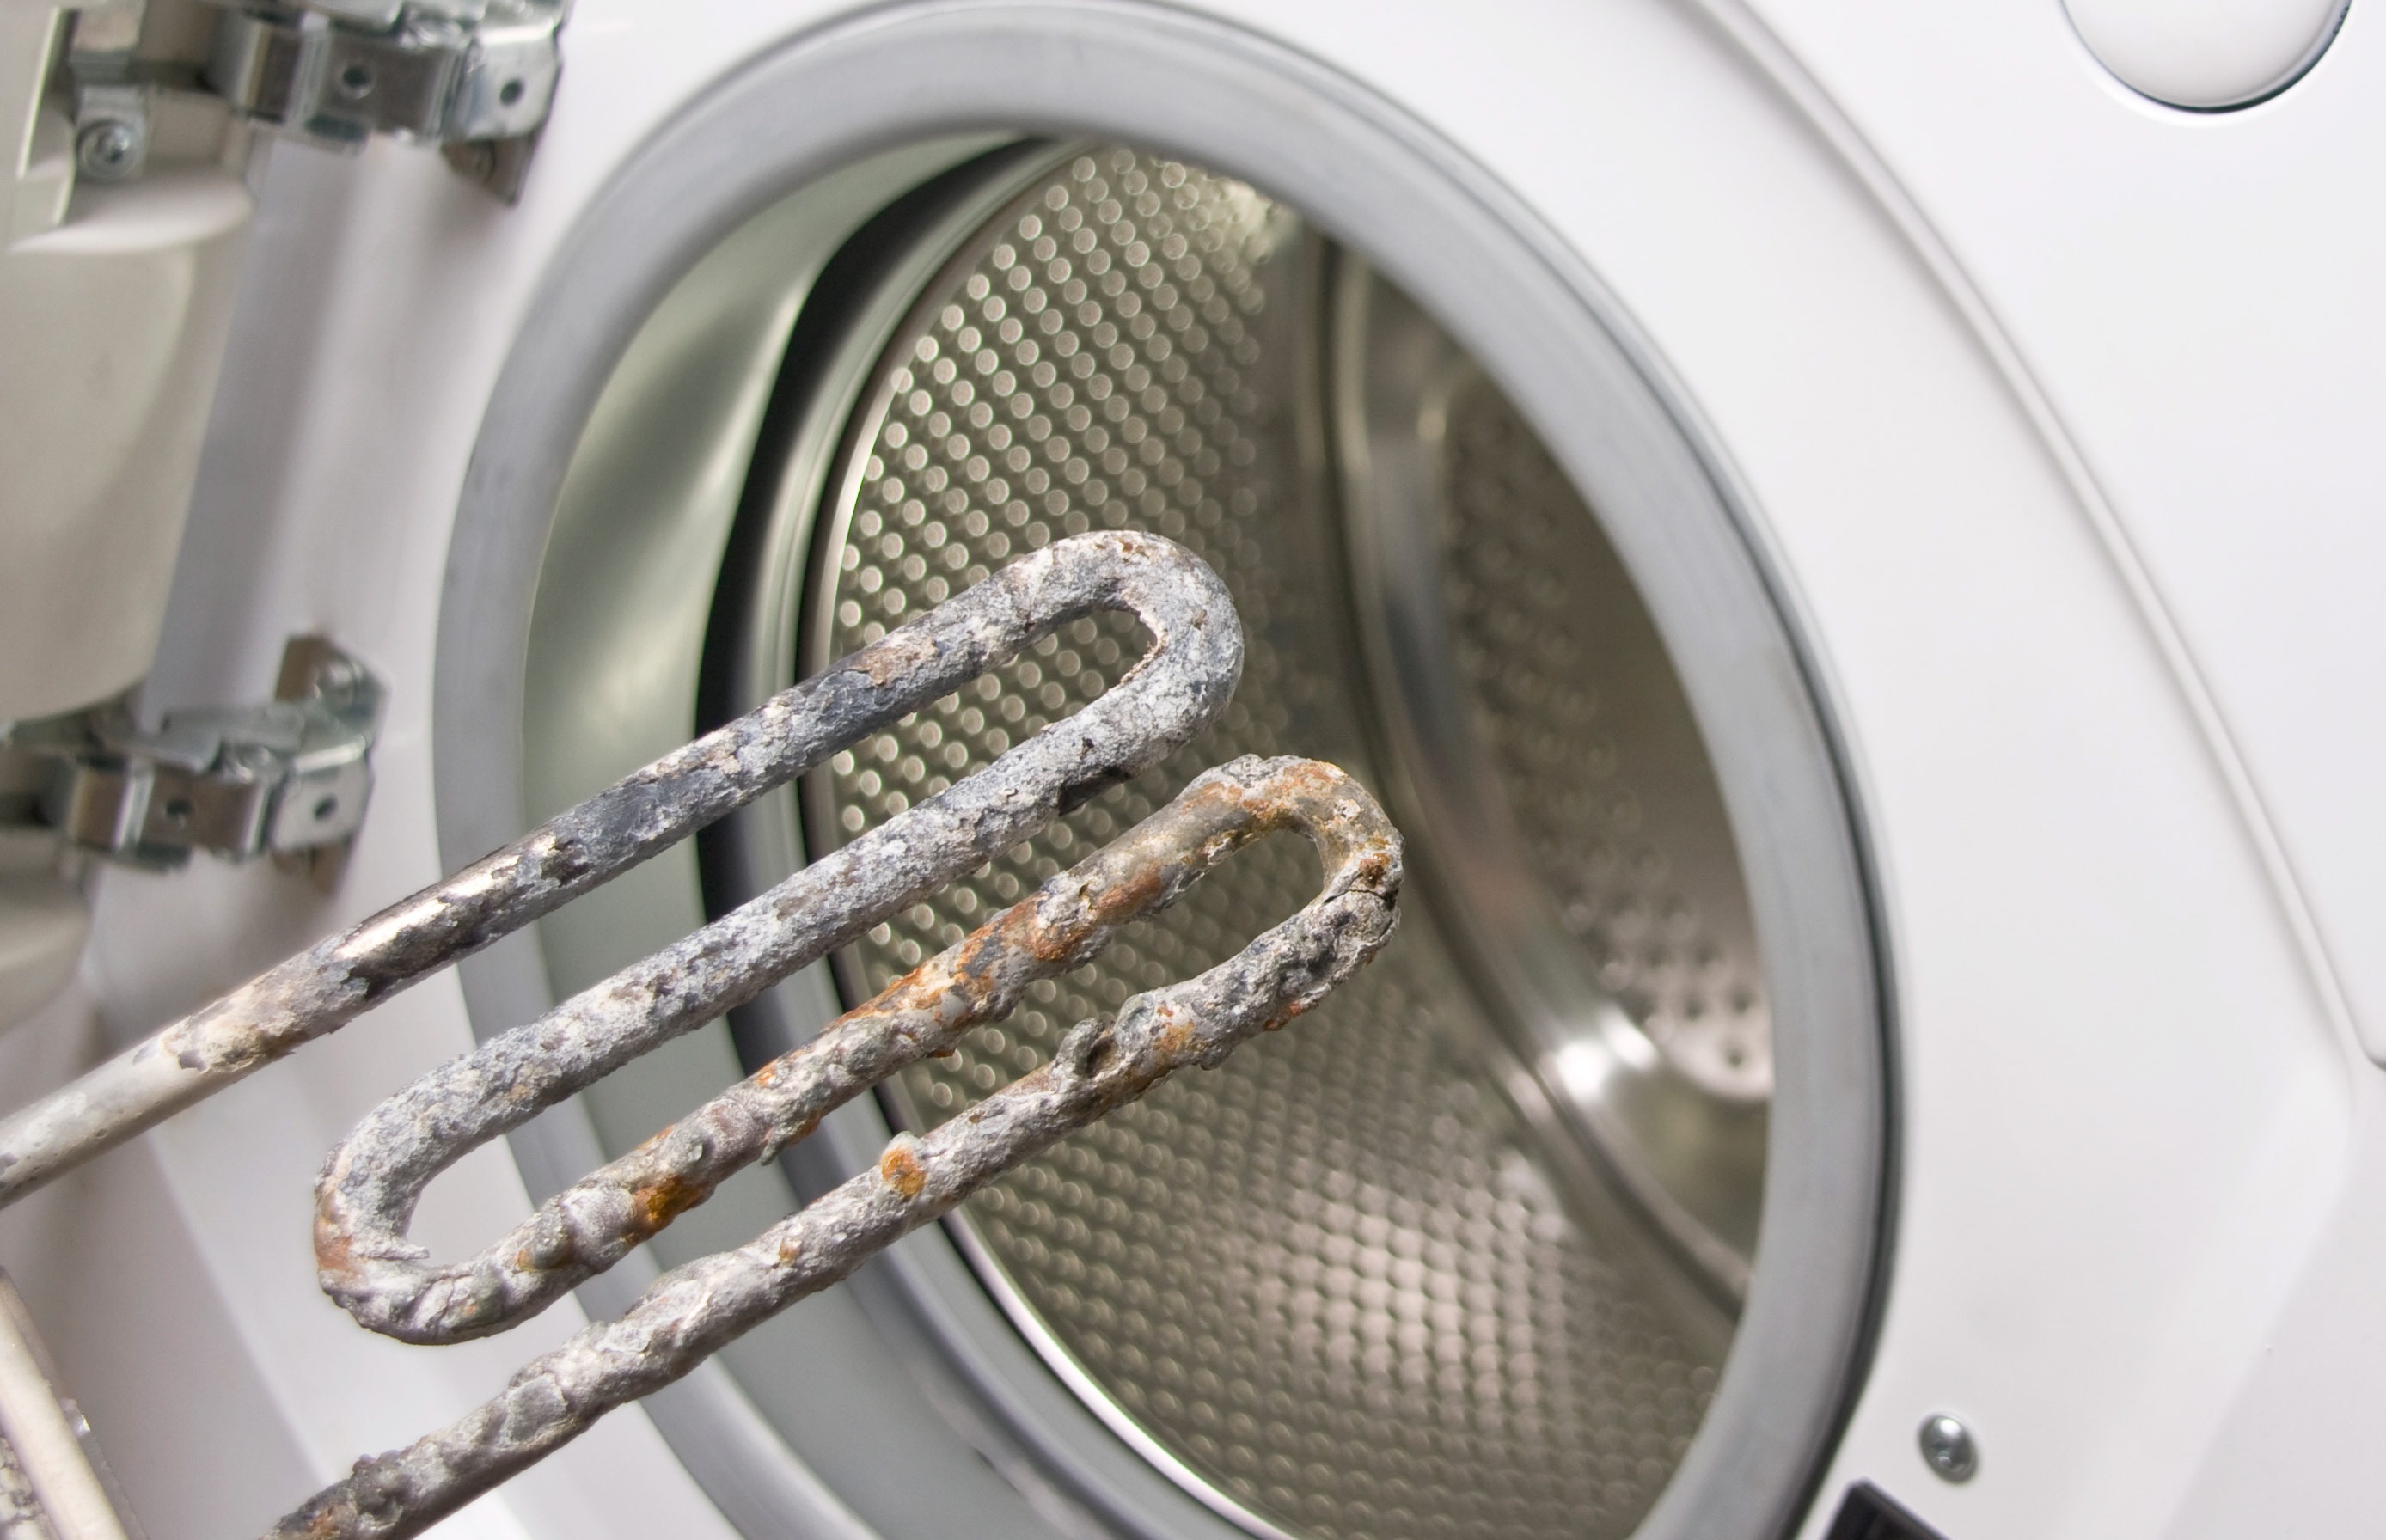 El elemento calefactor a menudo se quema en las lavadoras y secadoras.